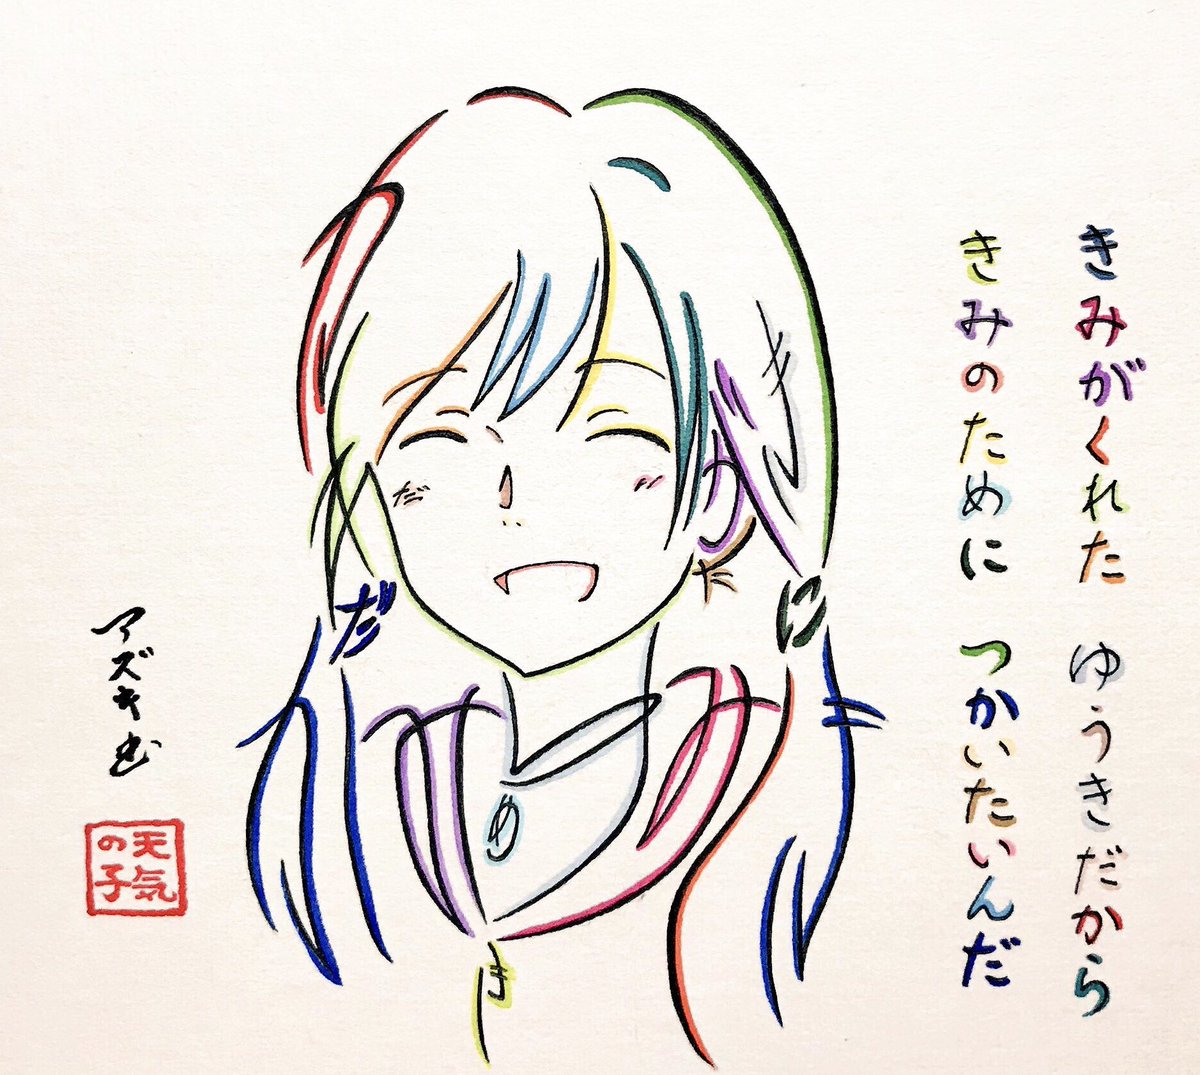 「愛にできることはまだあるかい」の歌詞で描いた陽菜さん #天気の子 